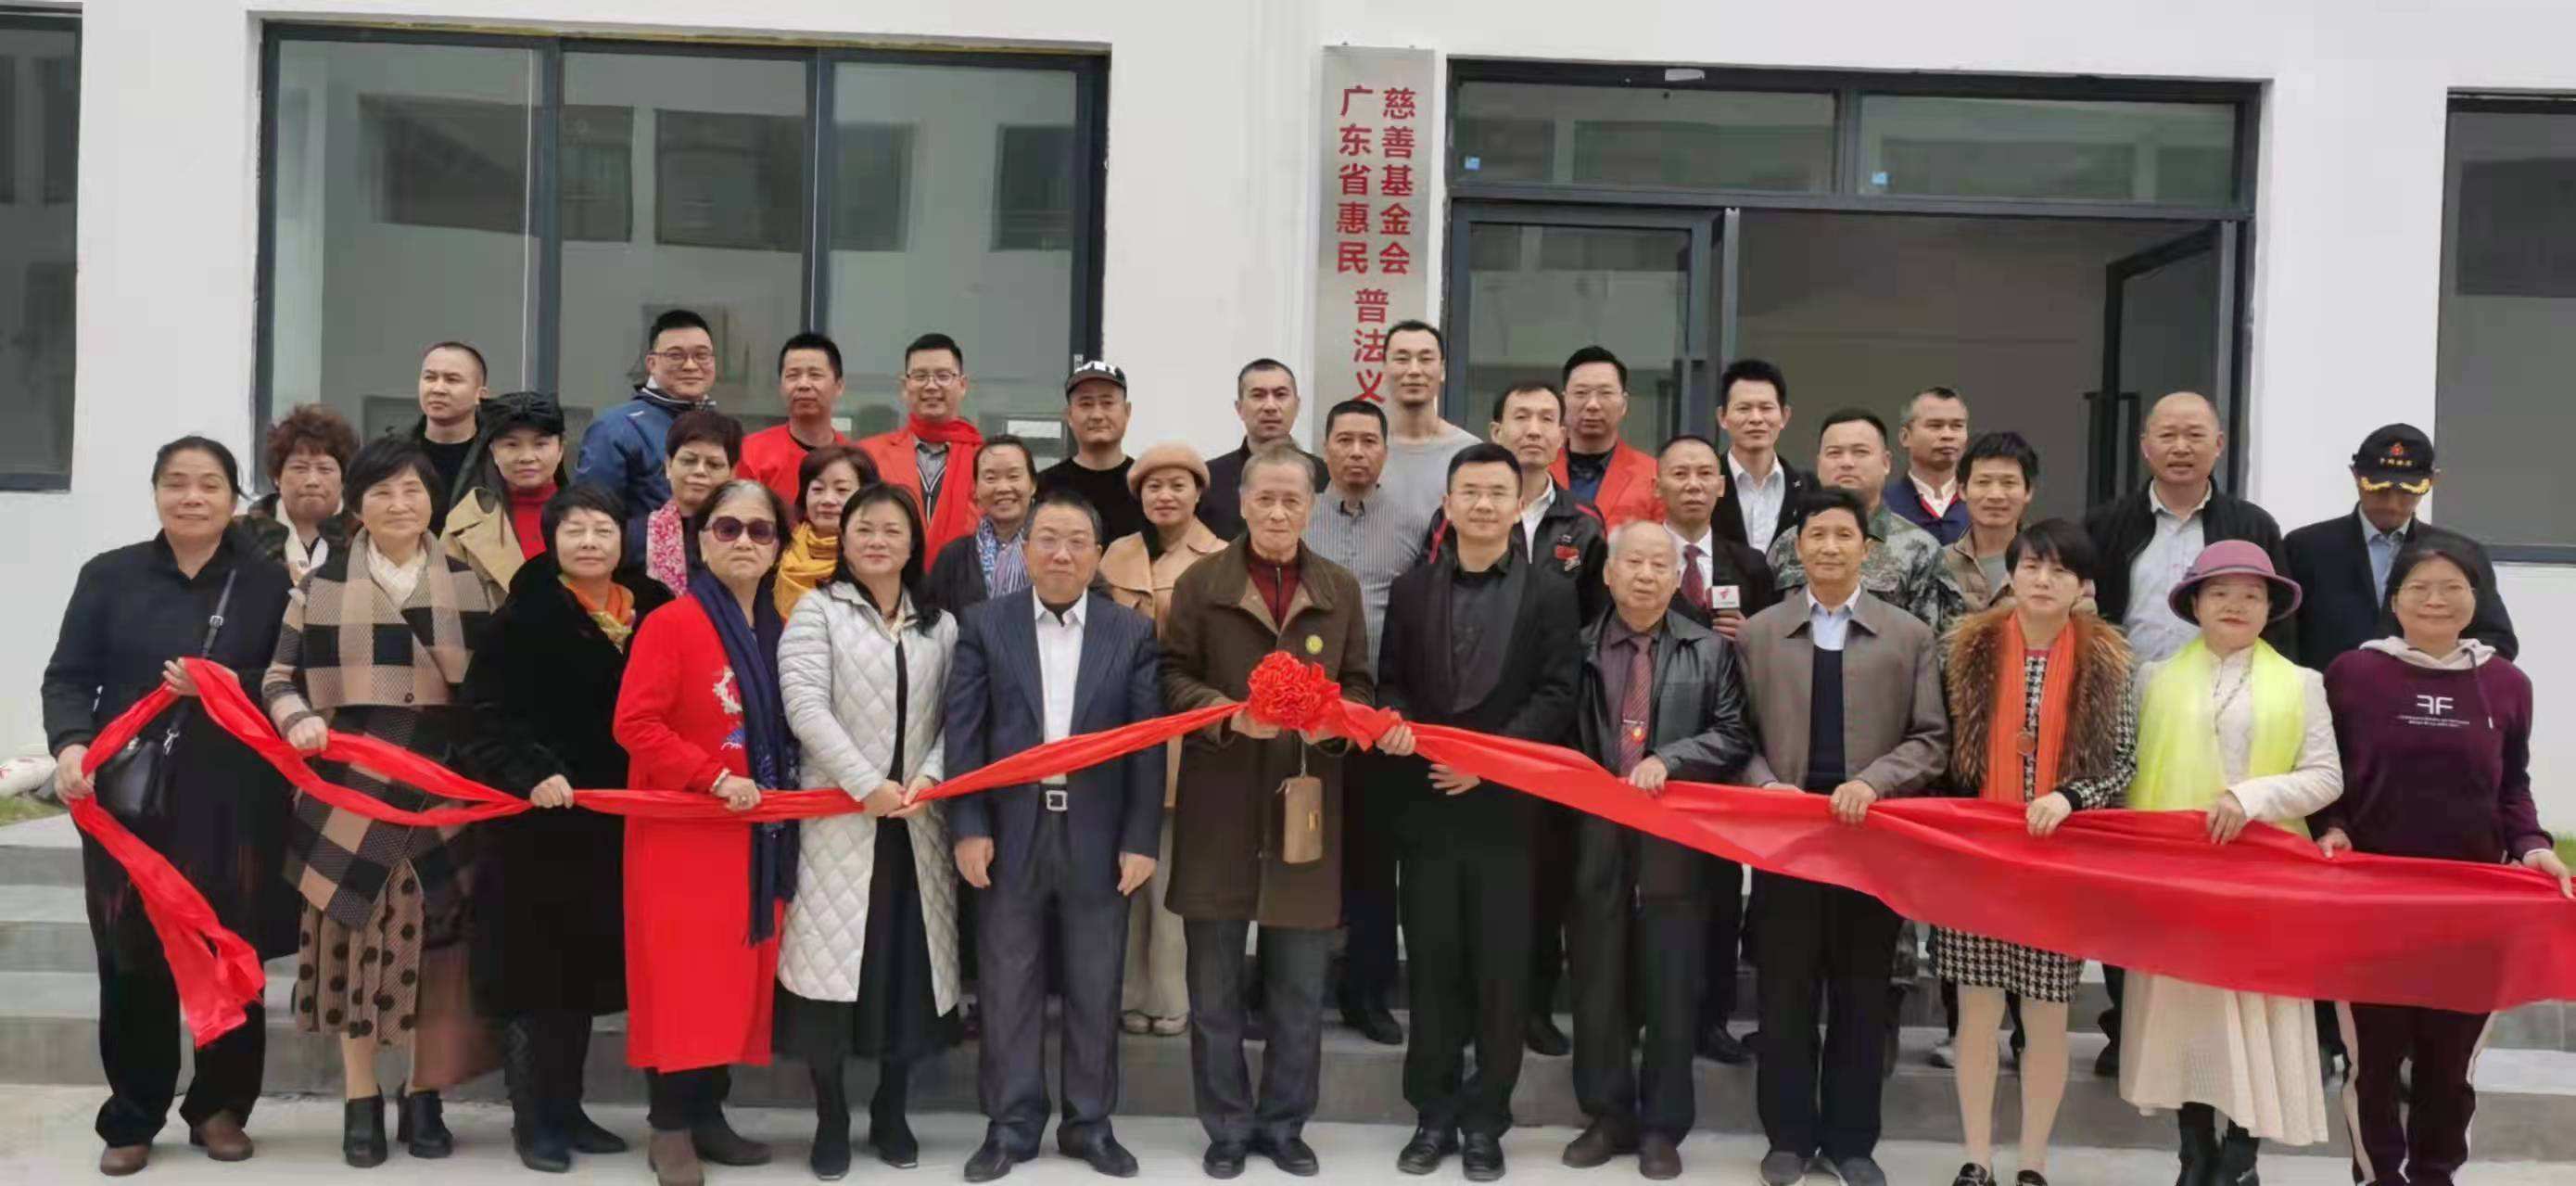 广东省惠民慈善基金会普法义工团教育基地隆重揭牌。 